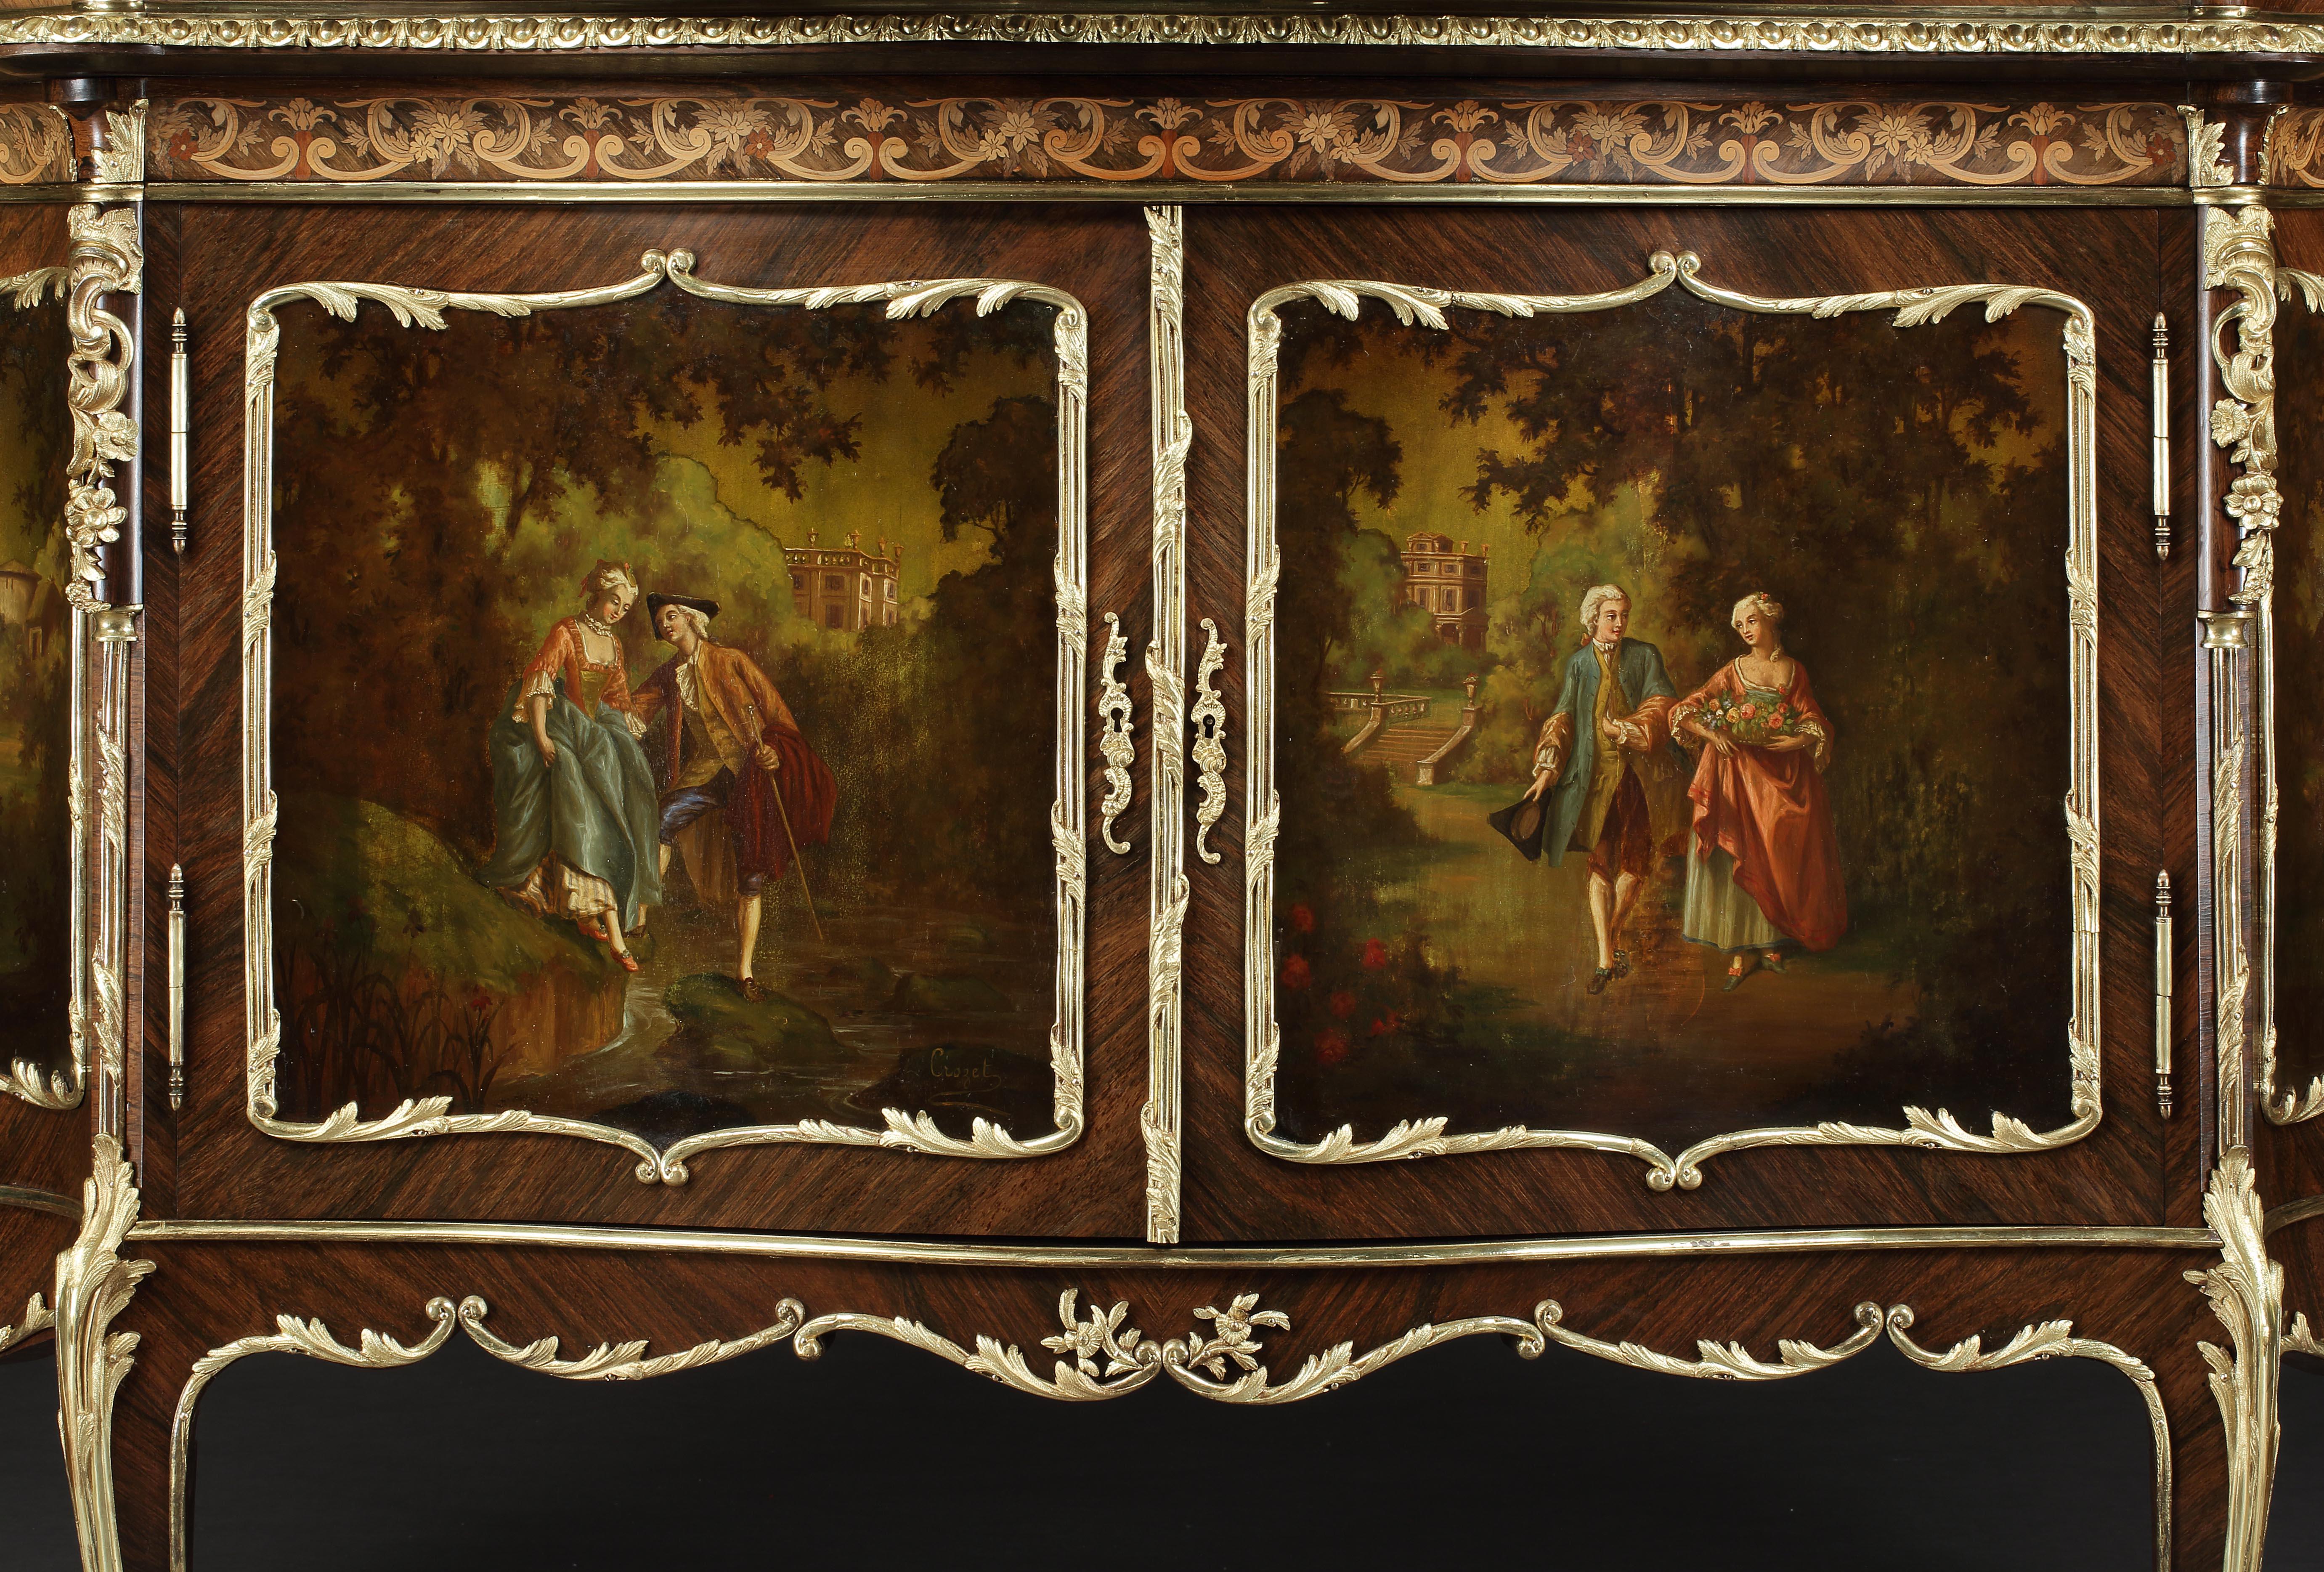 Un cabinet vitrine de style Louis XV Vernis Martin

Construit en bois de roi, richement habillé de montures en bronze doré finement moulées et ciselées, et présentant des panneaux de style Vernis Martin ; de forme serpentine, s'élevant de pieds